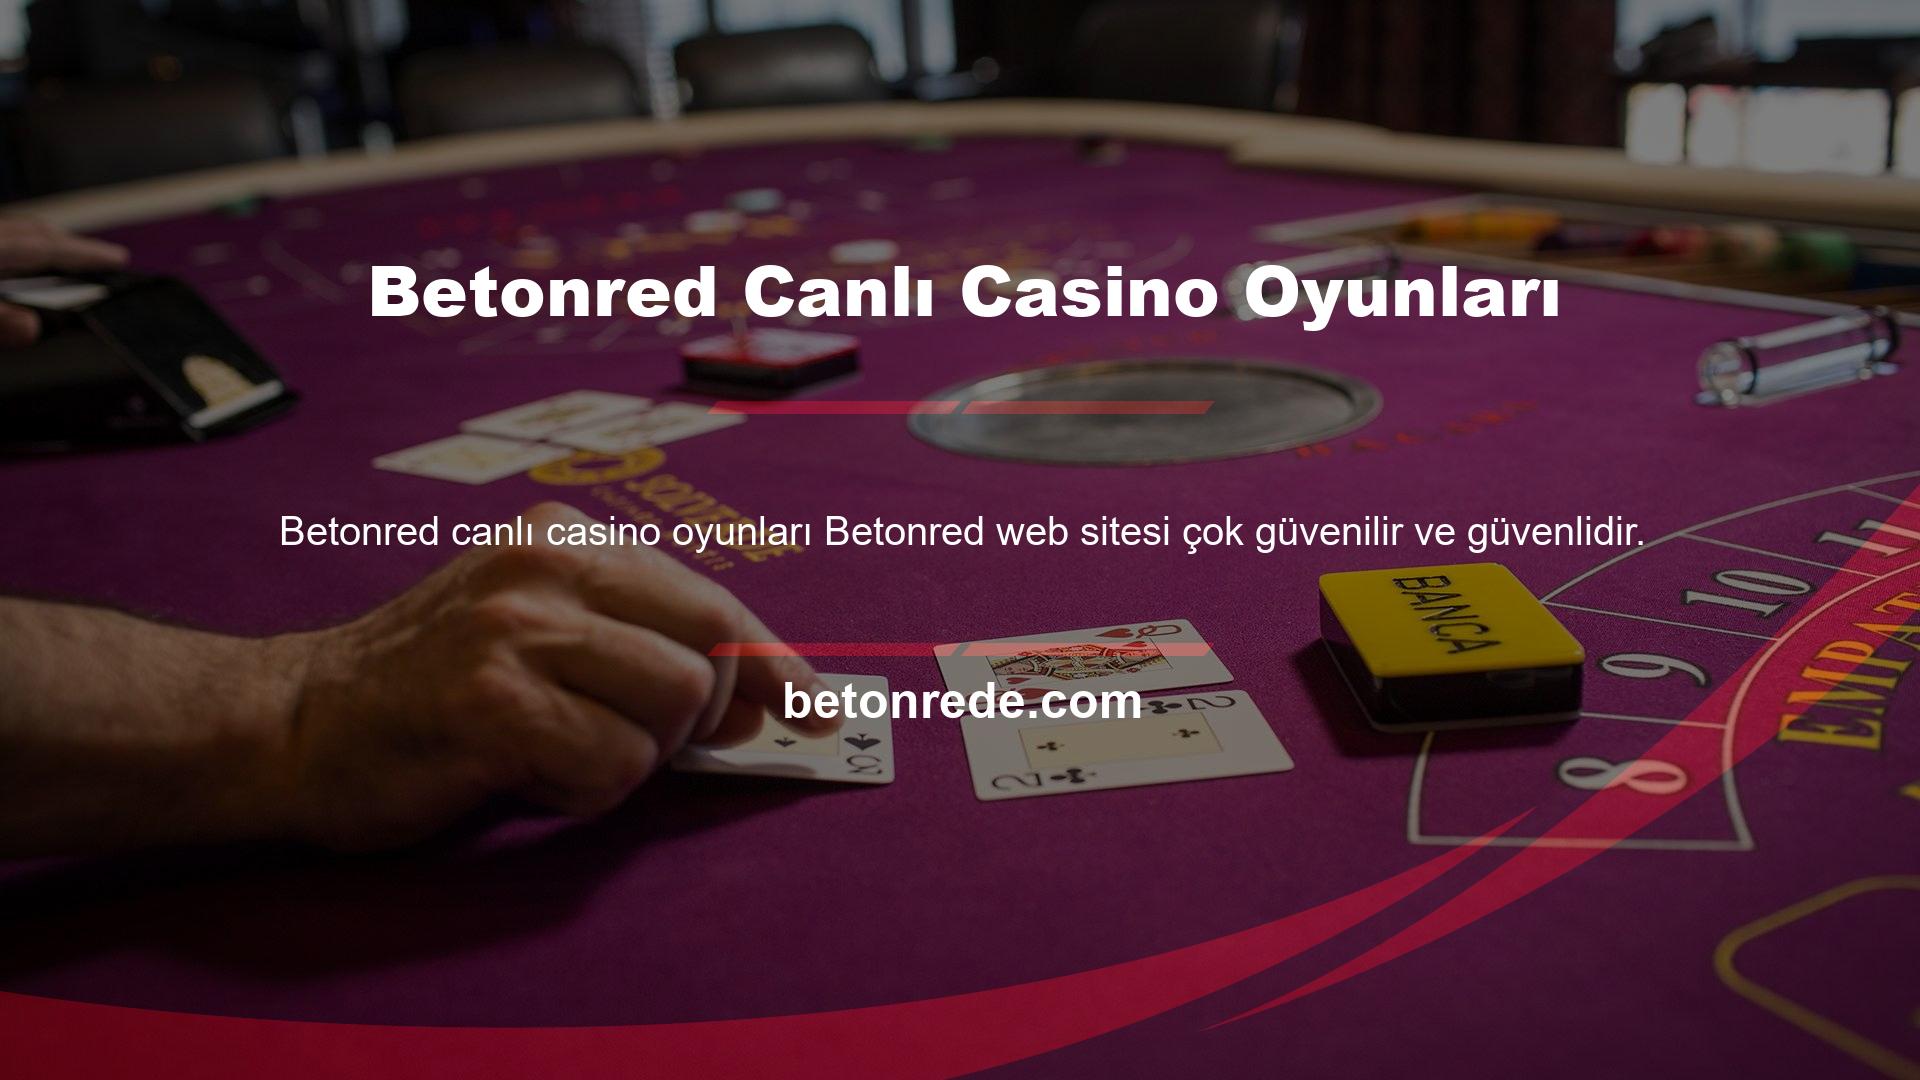 Betonred Canlı Casino Oyunları